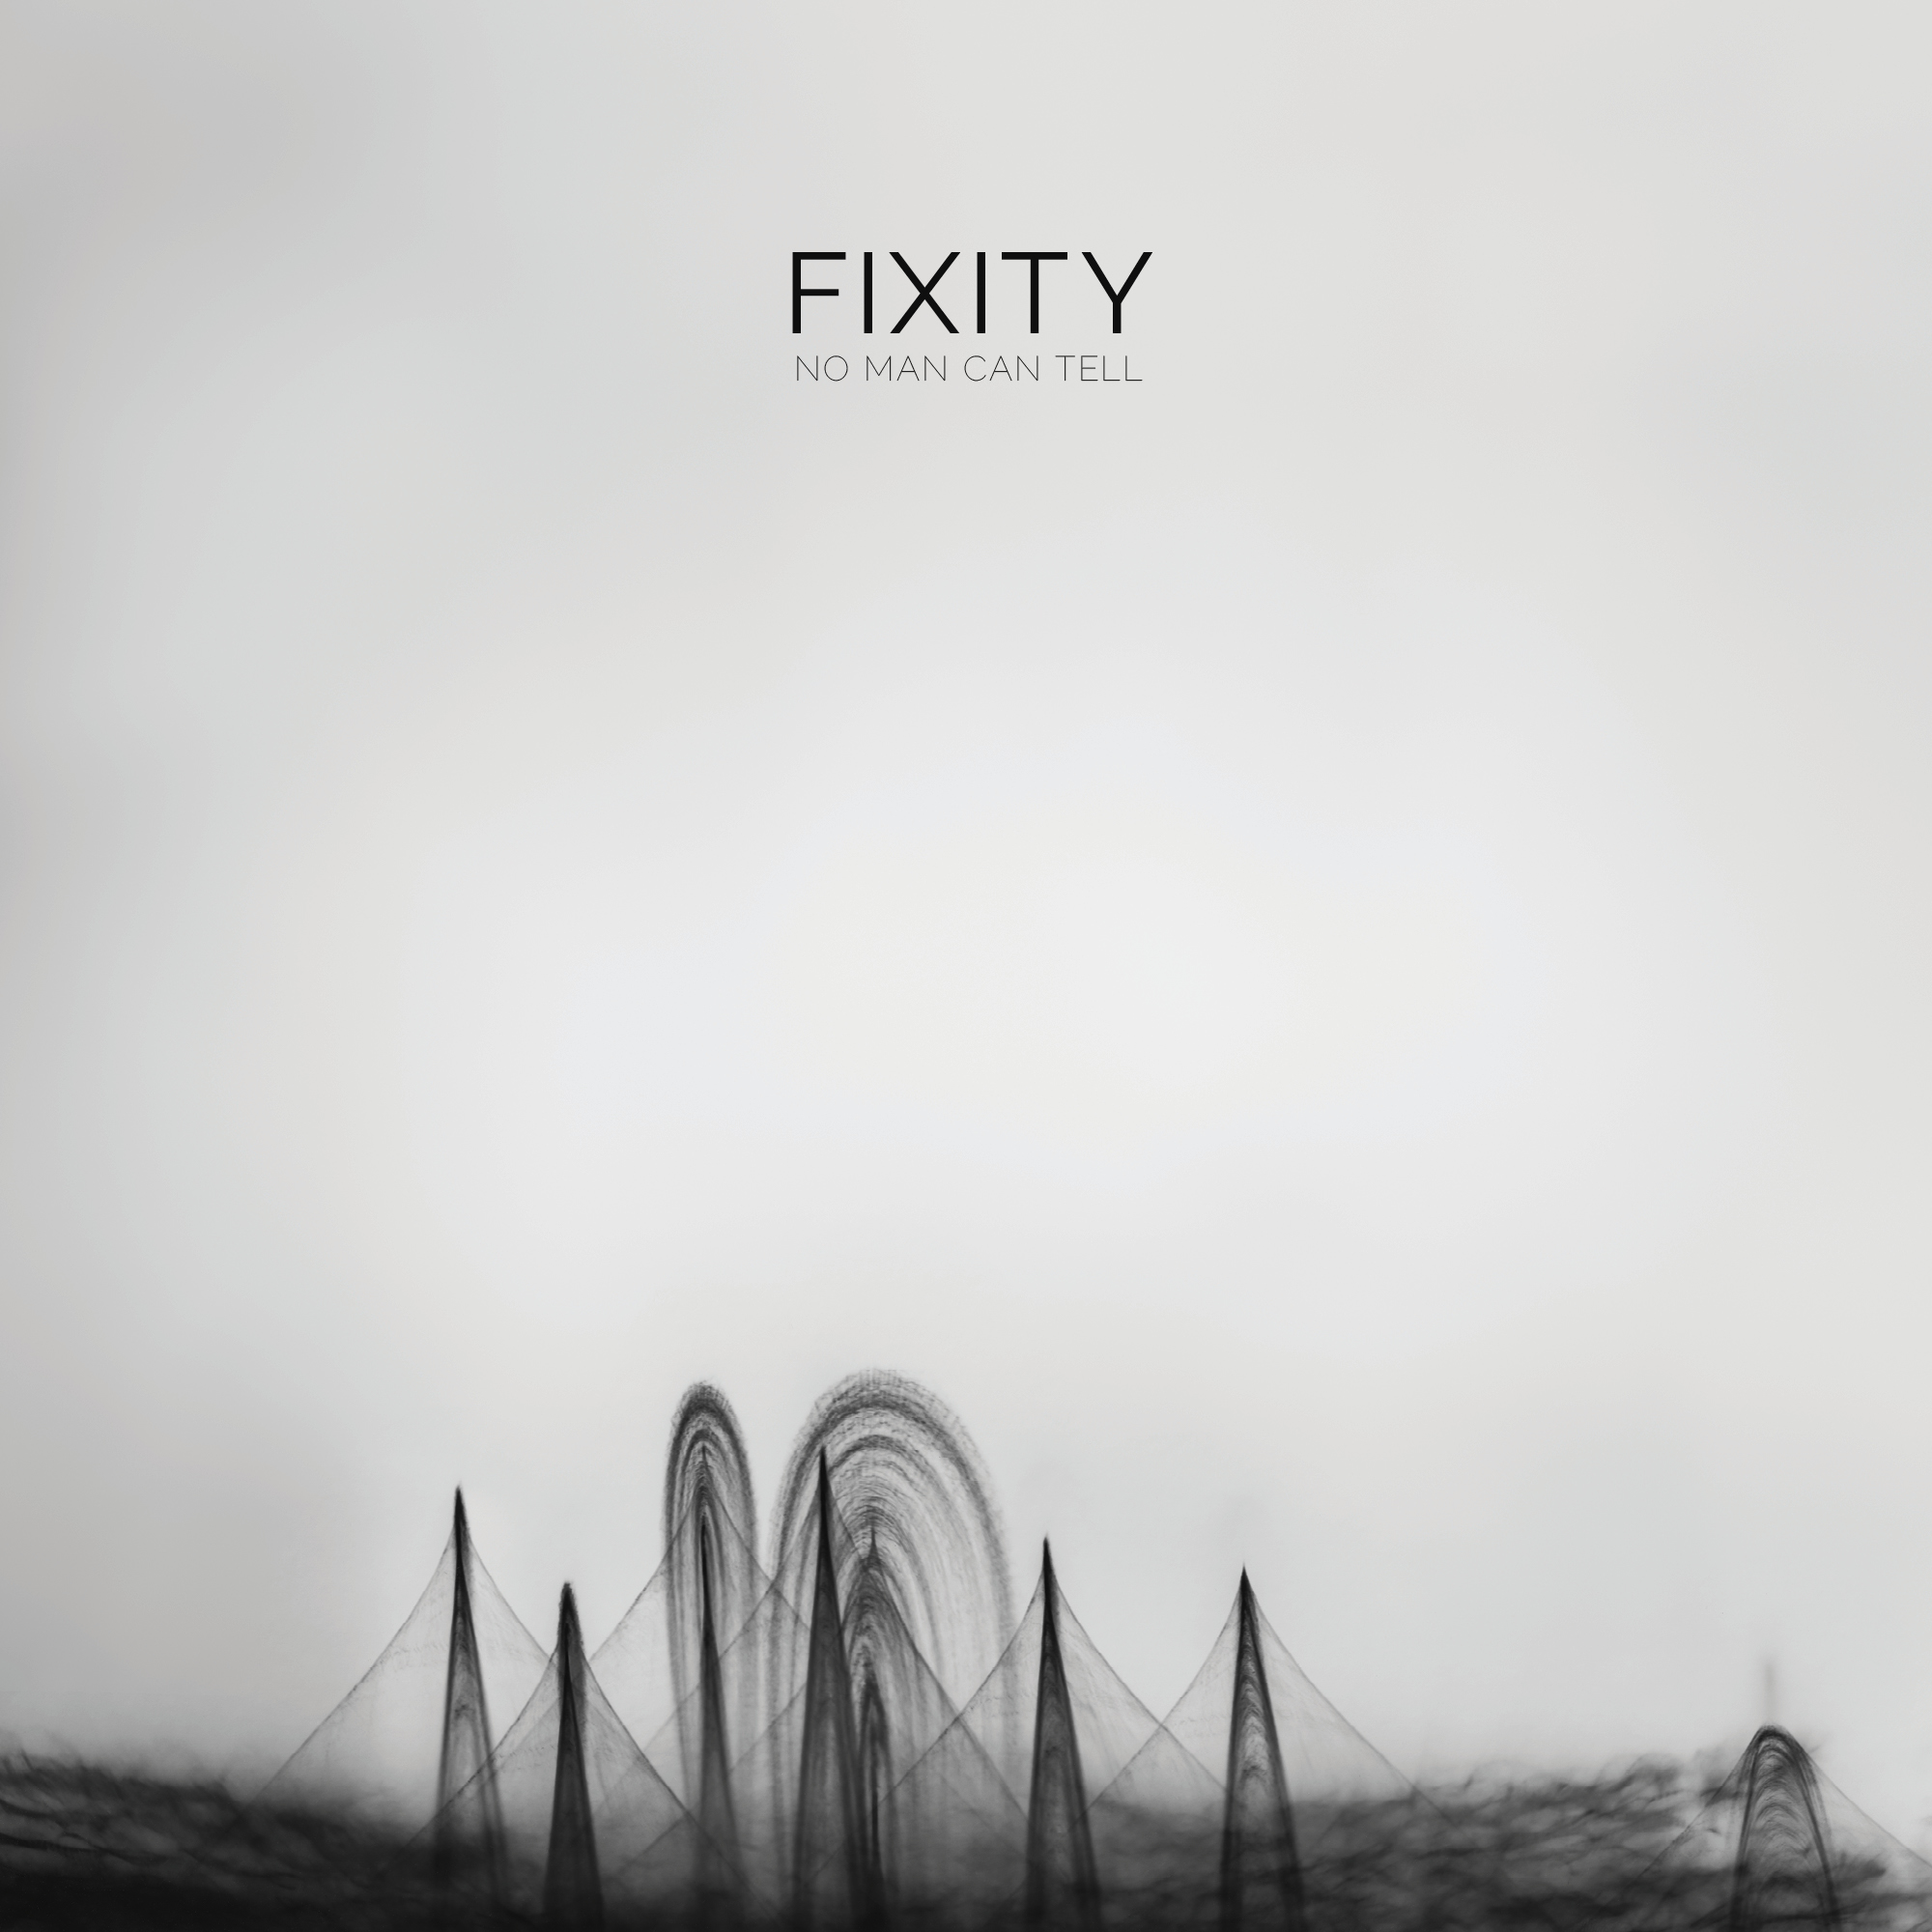 Fixity